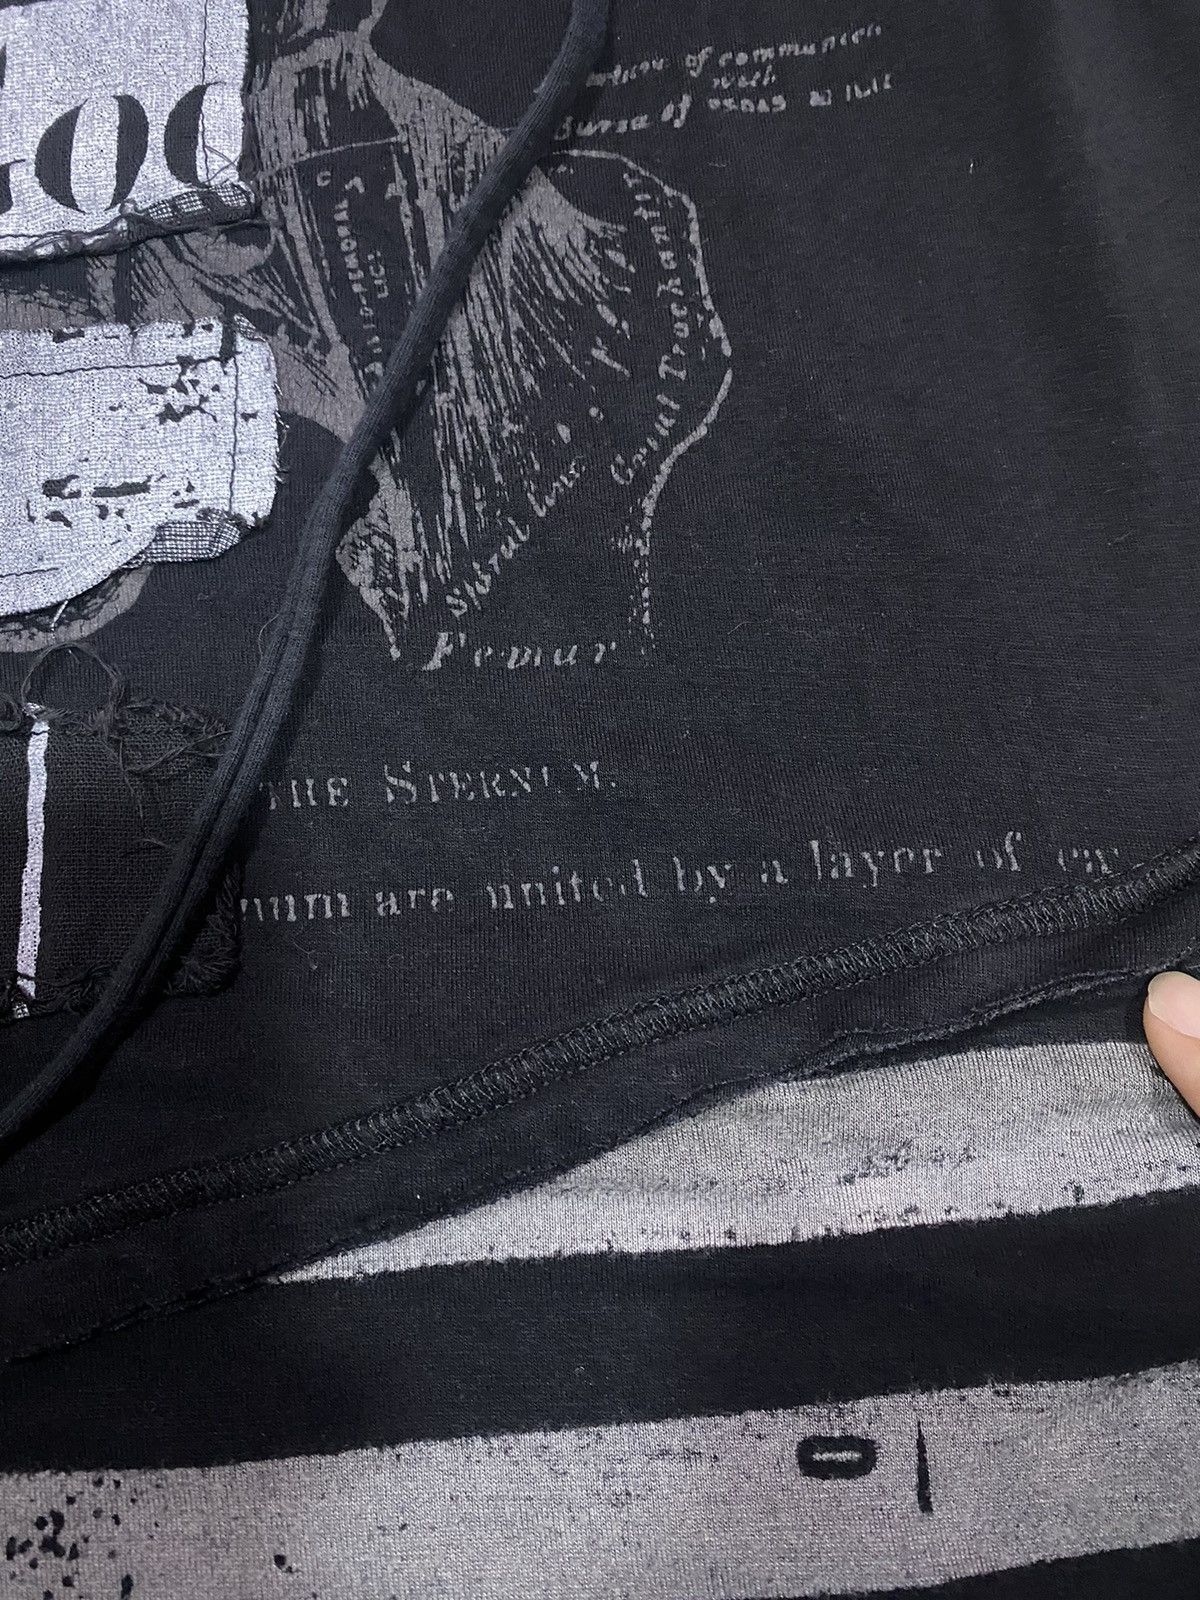 If Six Was Nine - H. Anarchy Punk Sleeveless Single Sleeve Bondage T-Shirt - 5